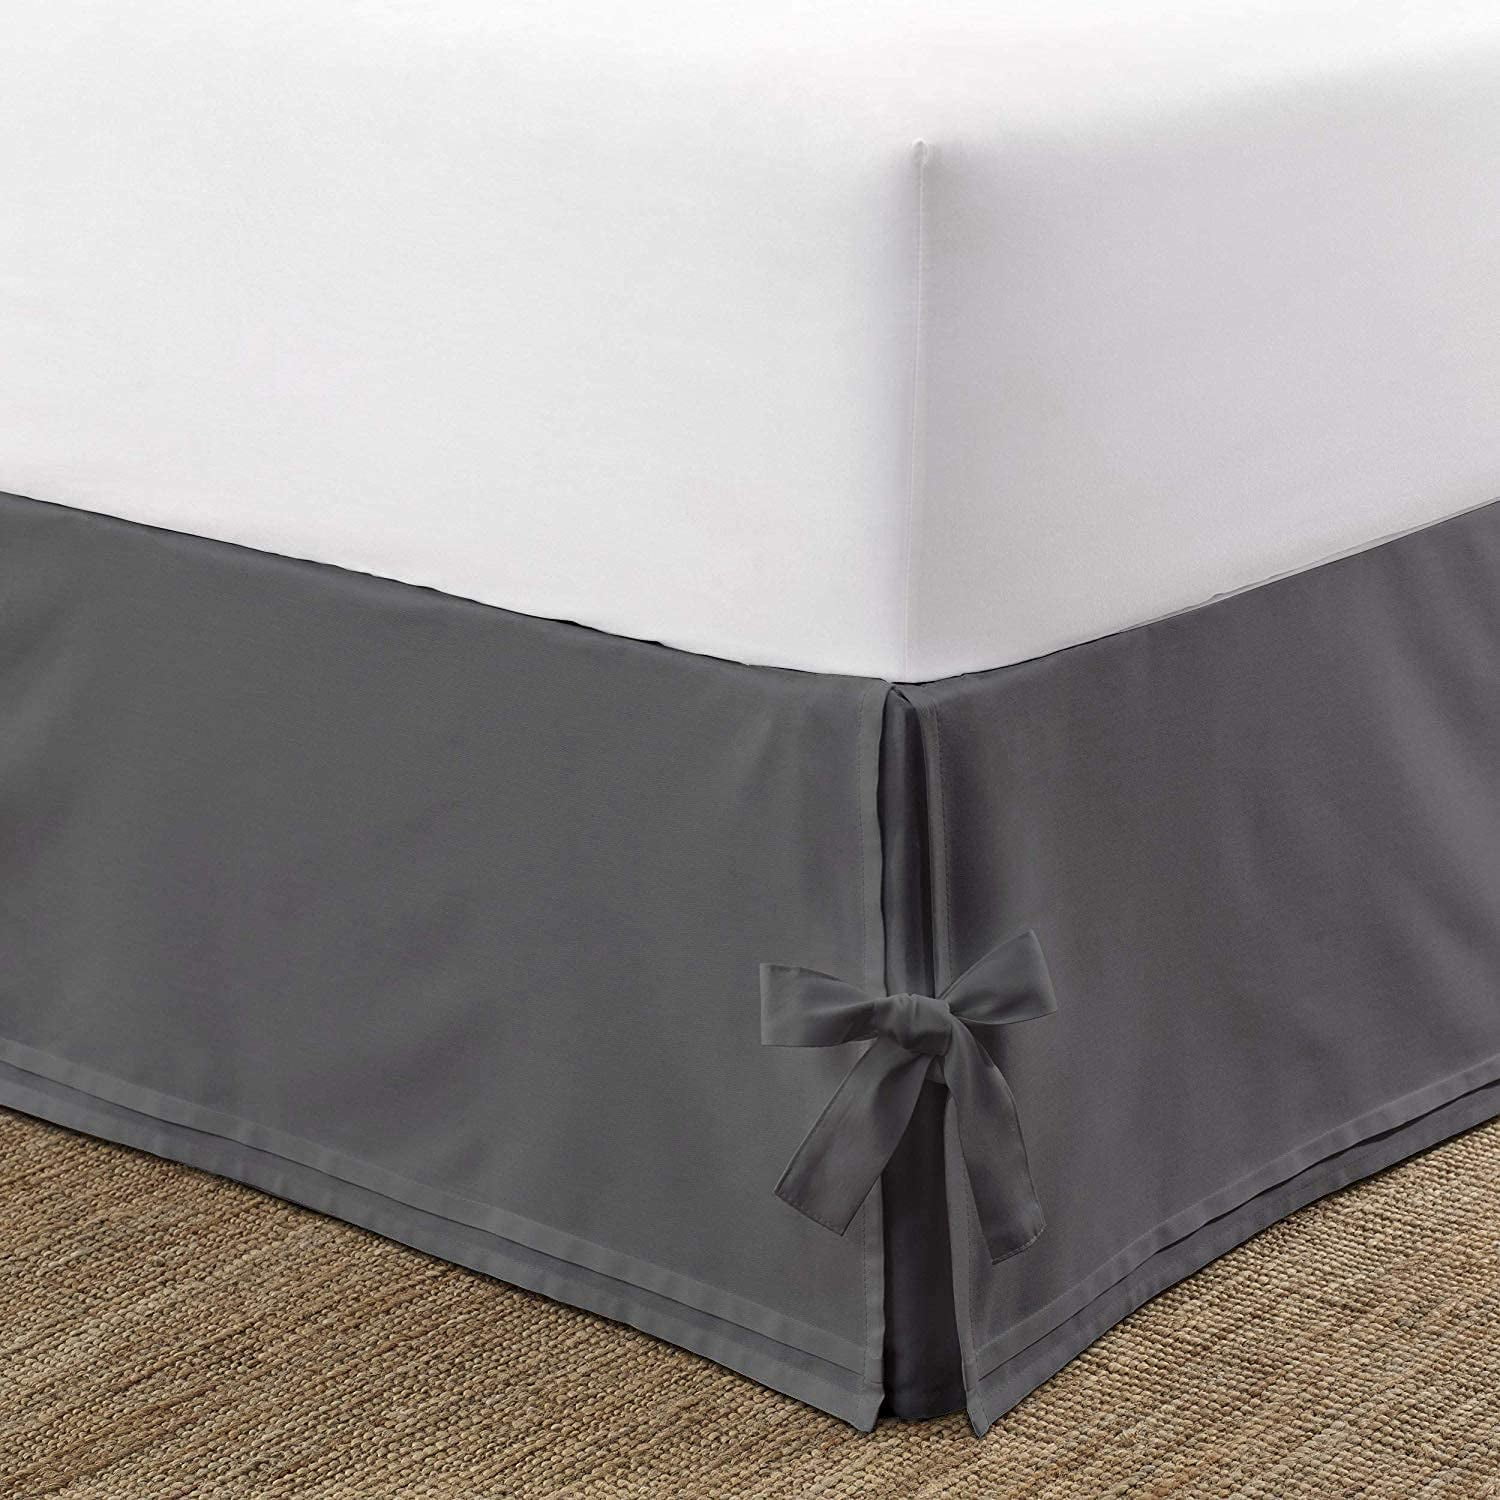 Dust Ruffle Bed Skirt Dark Grey Egyptian Cotton Split Corner 600 Tc Easy Fit 